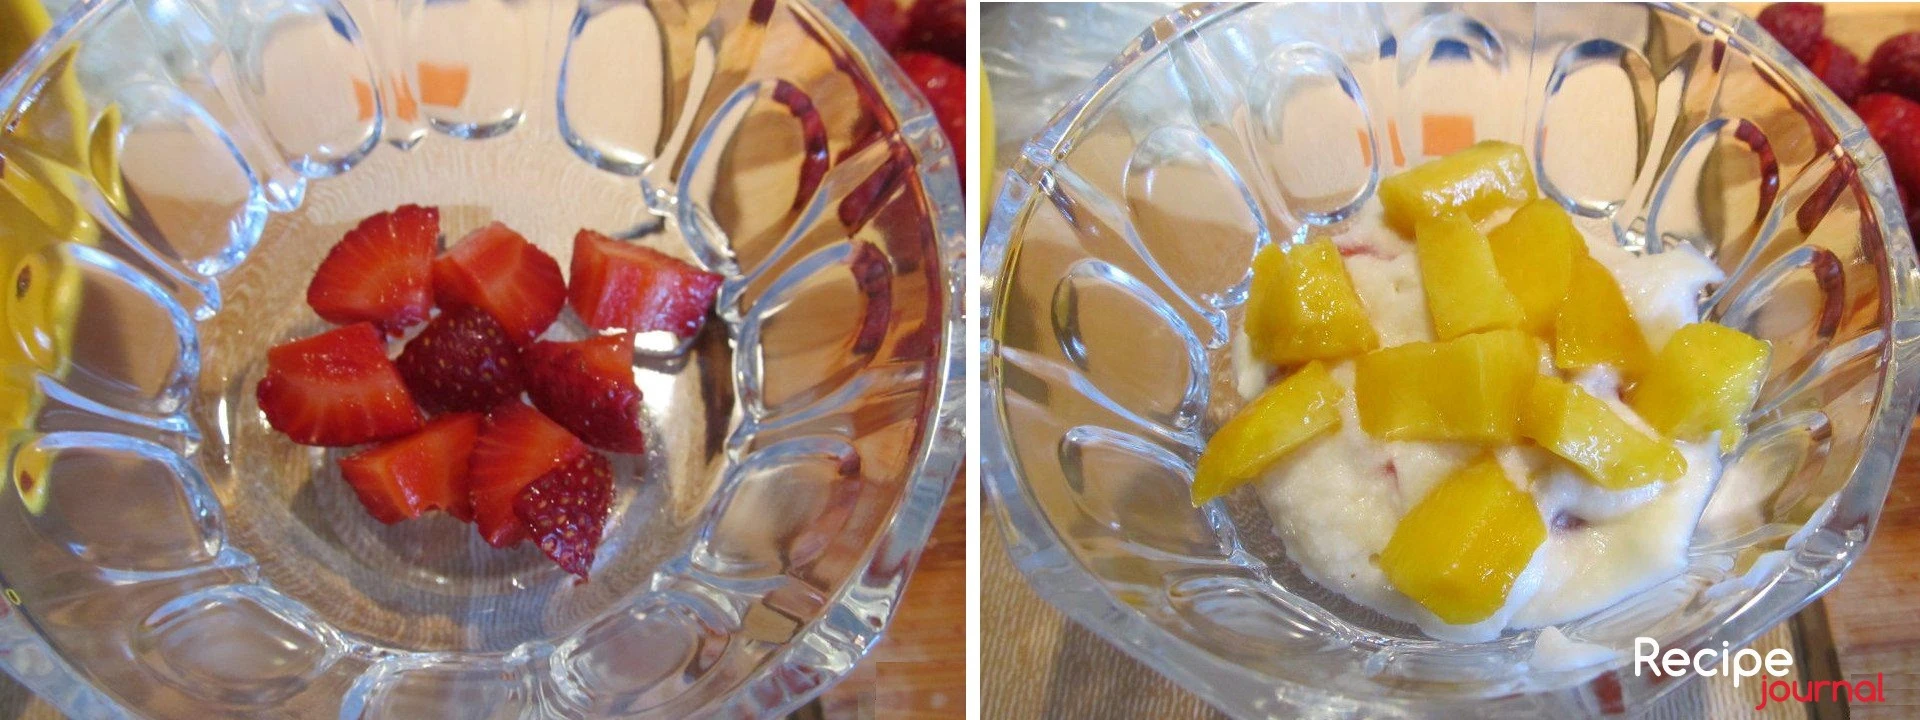 А теперь собираем парфе. В стаканчики или креманки выкладываем слоями фрукты  прослаиваем взбитым сливочно-зефирным кремом.